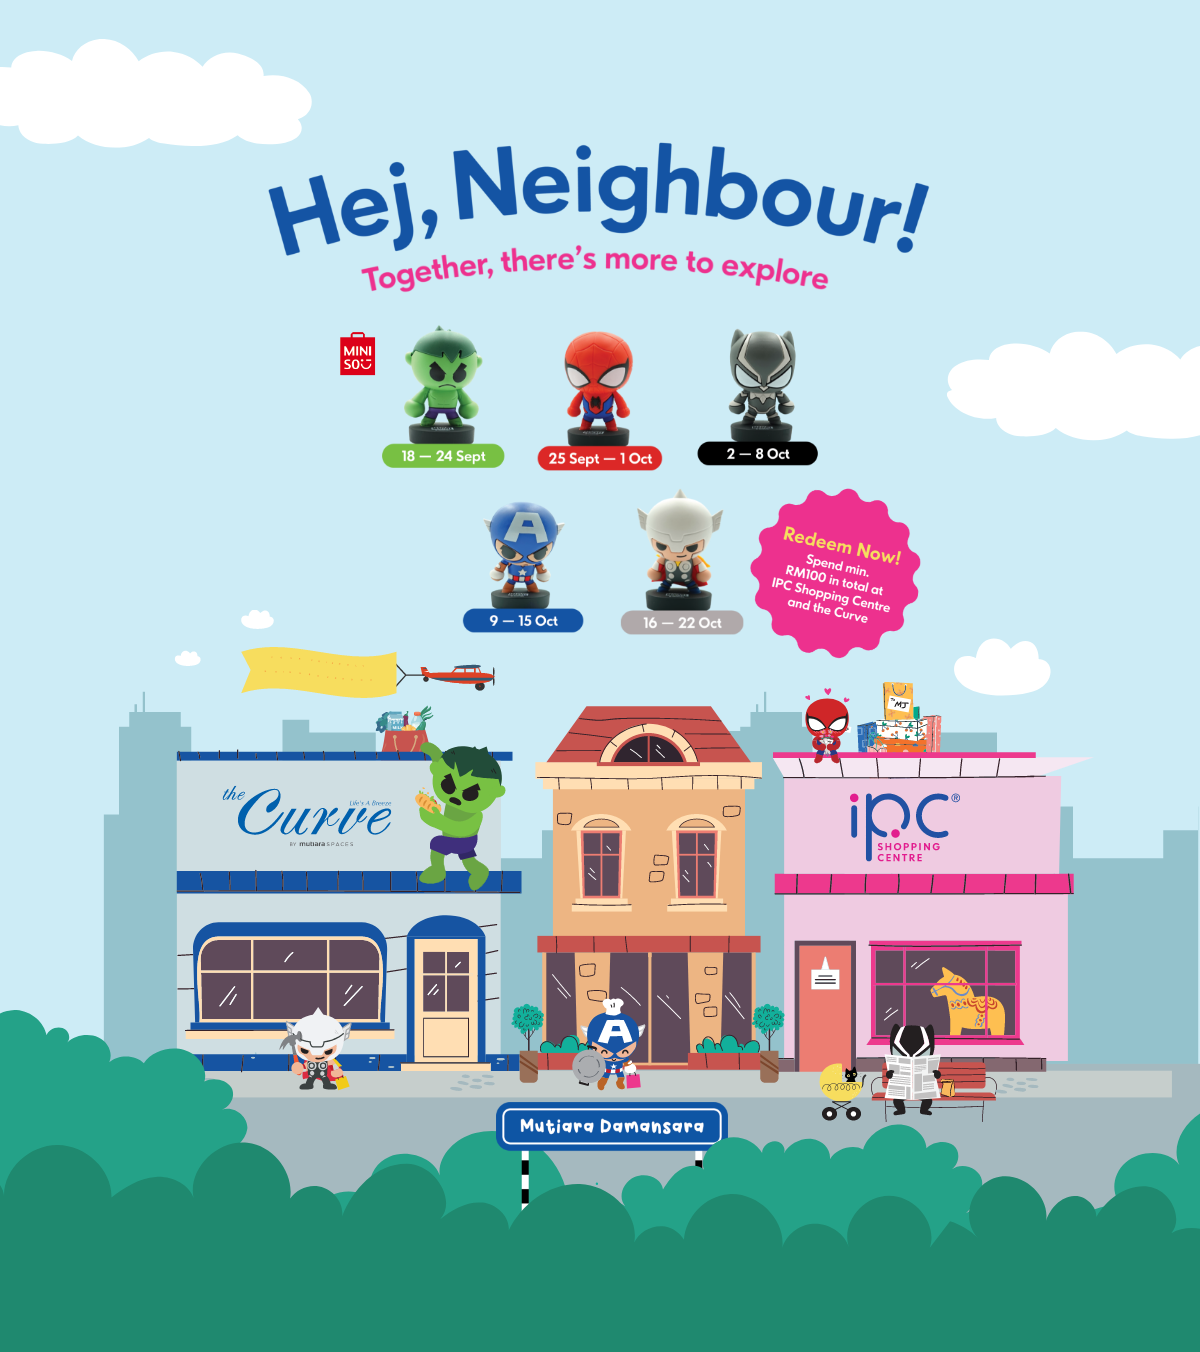 ‘Hej Neighbor’ campaign